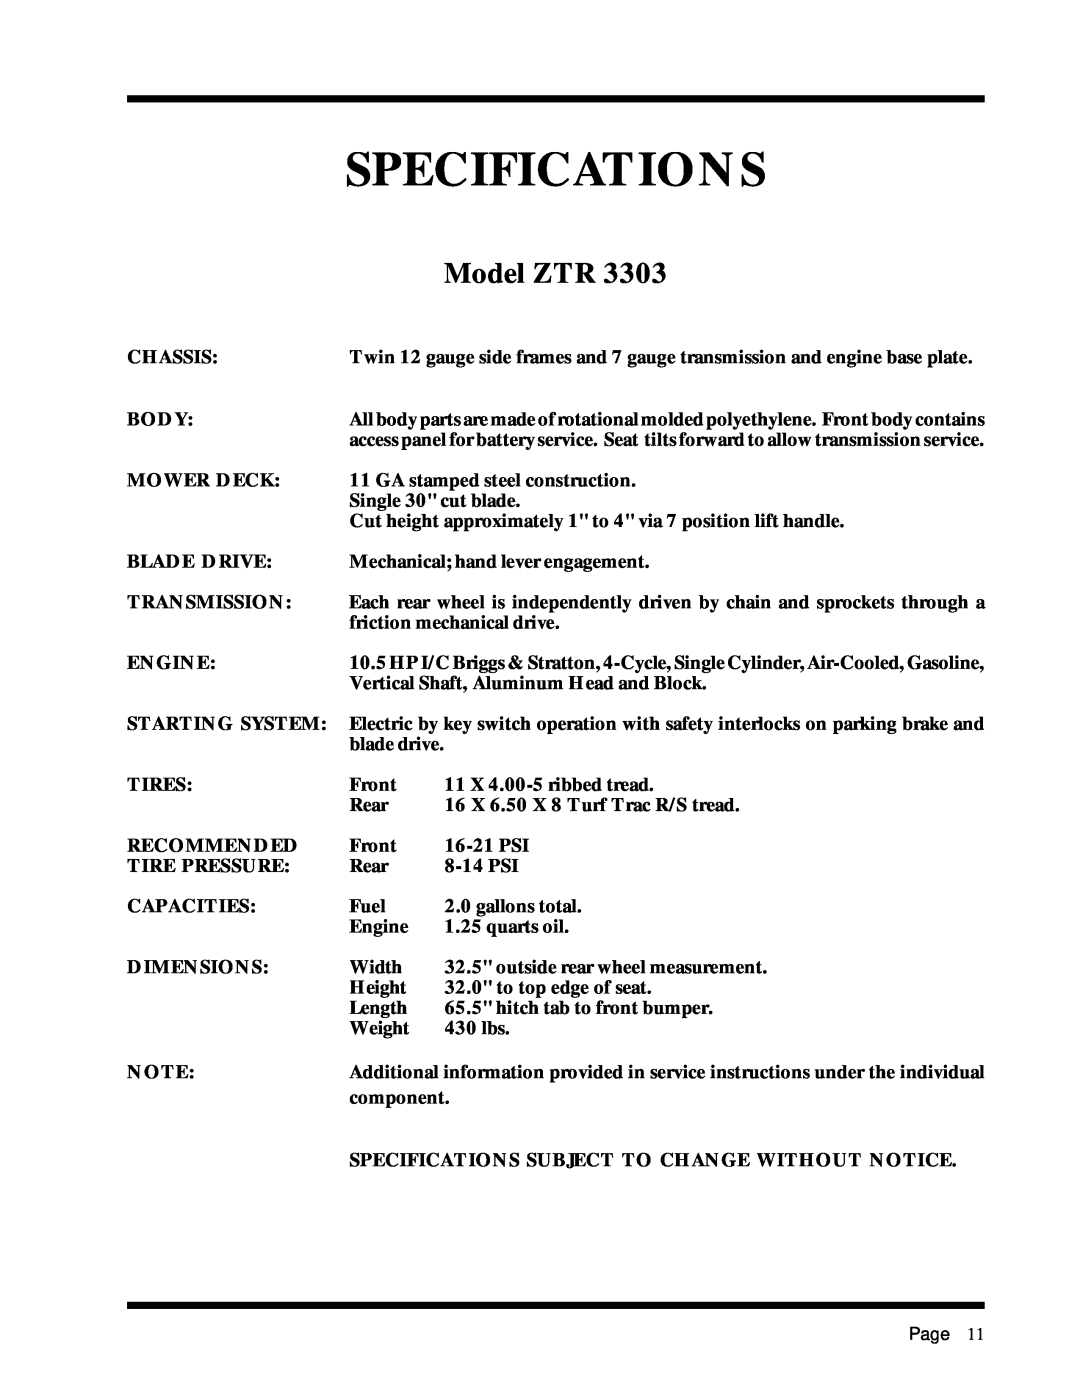 Dixon 6025 manual Specifications, Model ZTR 